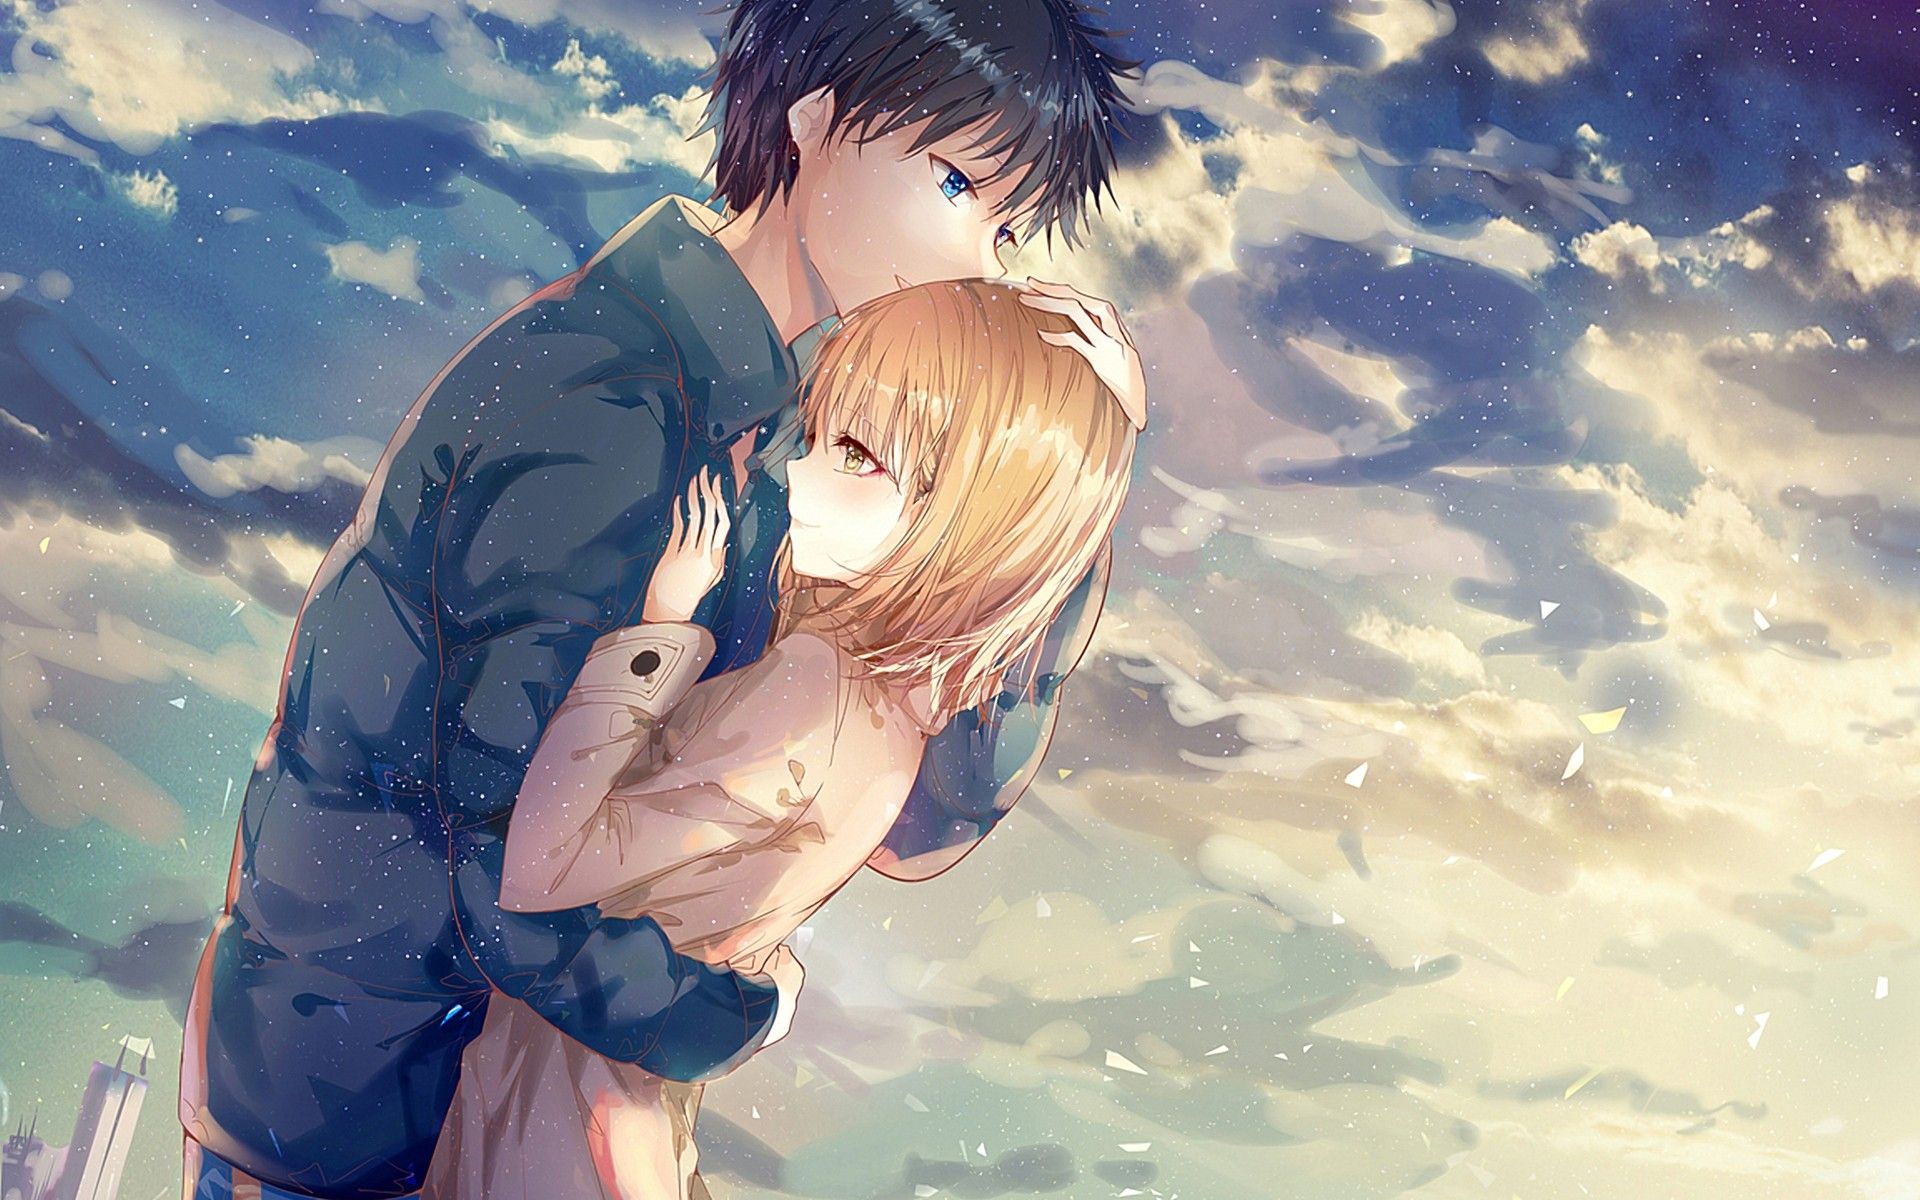 Hình Nền Bối Cảnh Mùa Thu Cho Cặp đôi Manga Anime được Yêu Thích I Love  You, Được Hình Nền, Yêu Hình Nền, Cặp đôi Hình Nền, HD và Nền Cờ đẹp